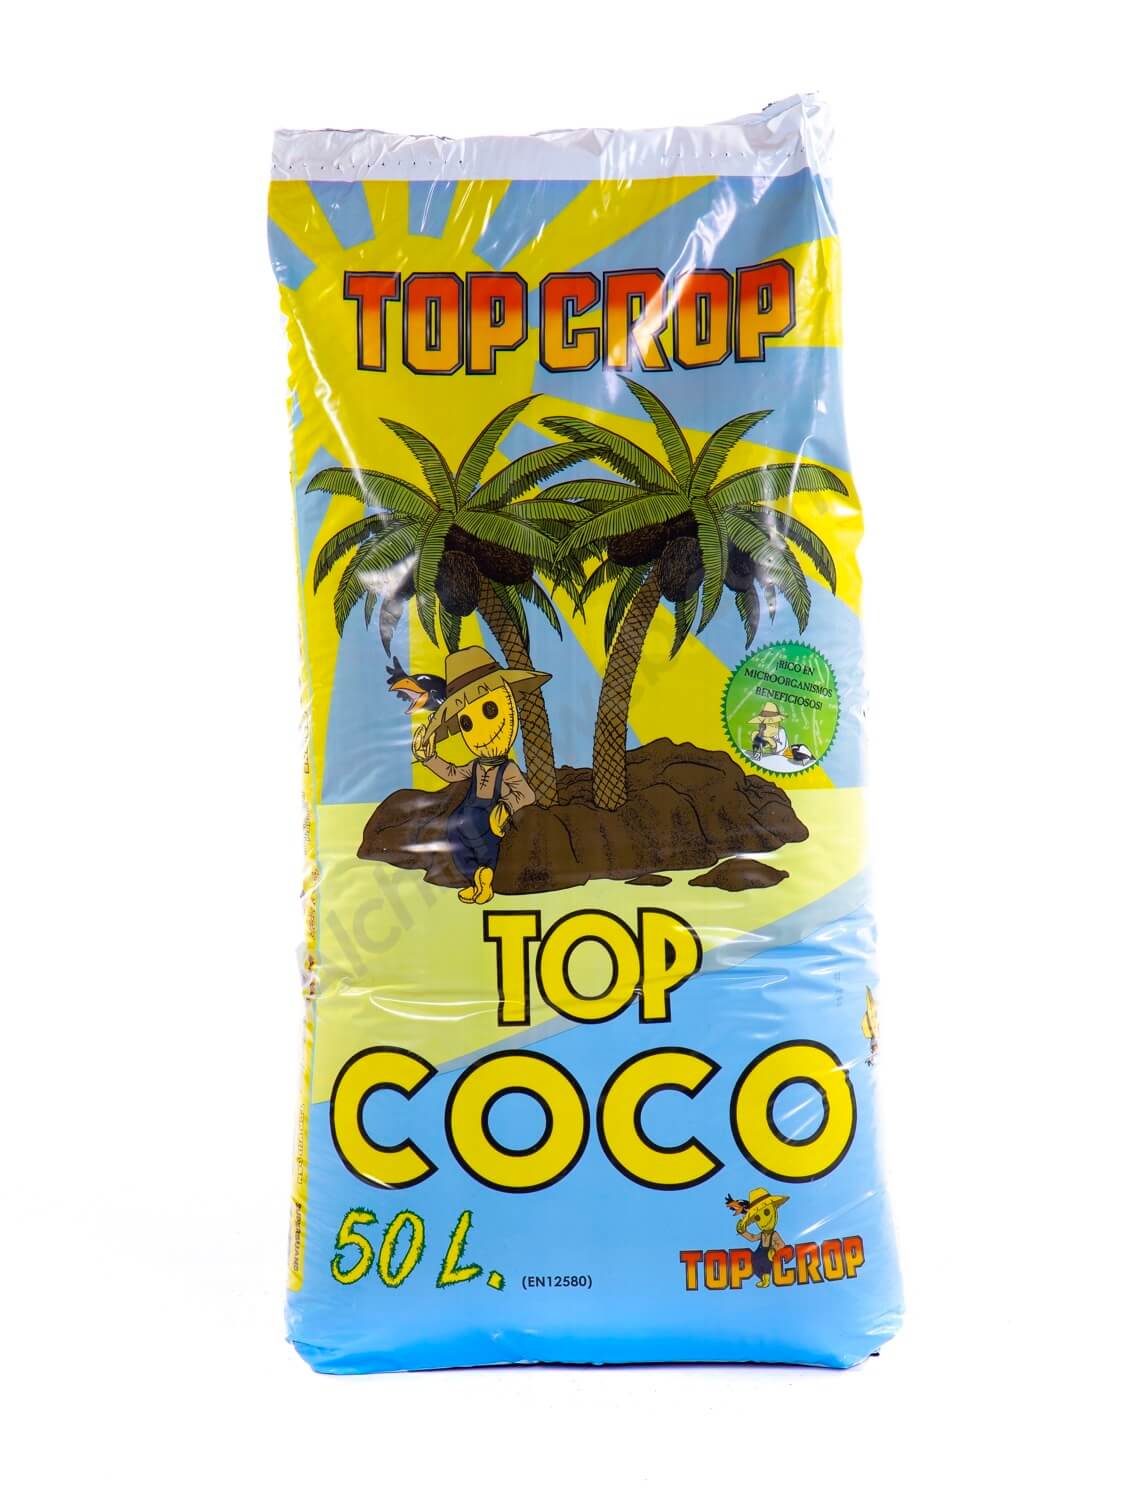 Venta de Top Coco de Top Crop